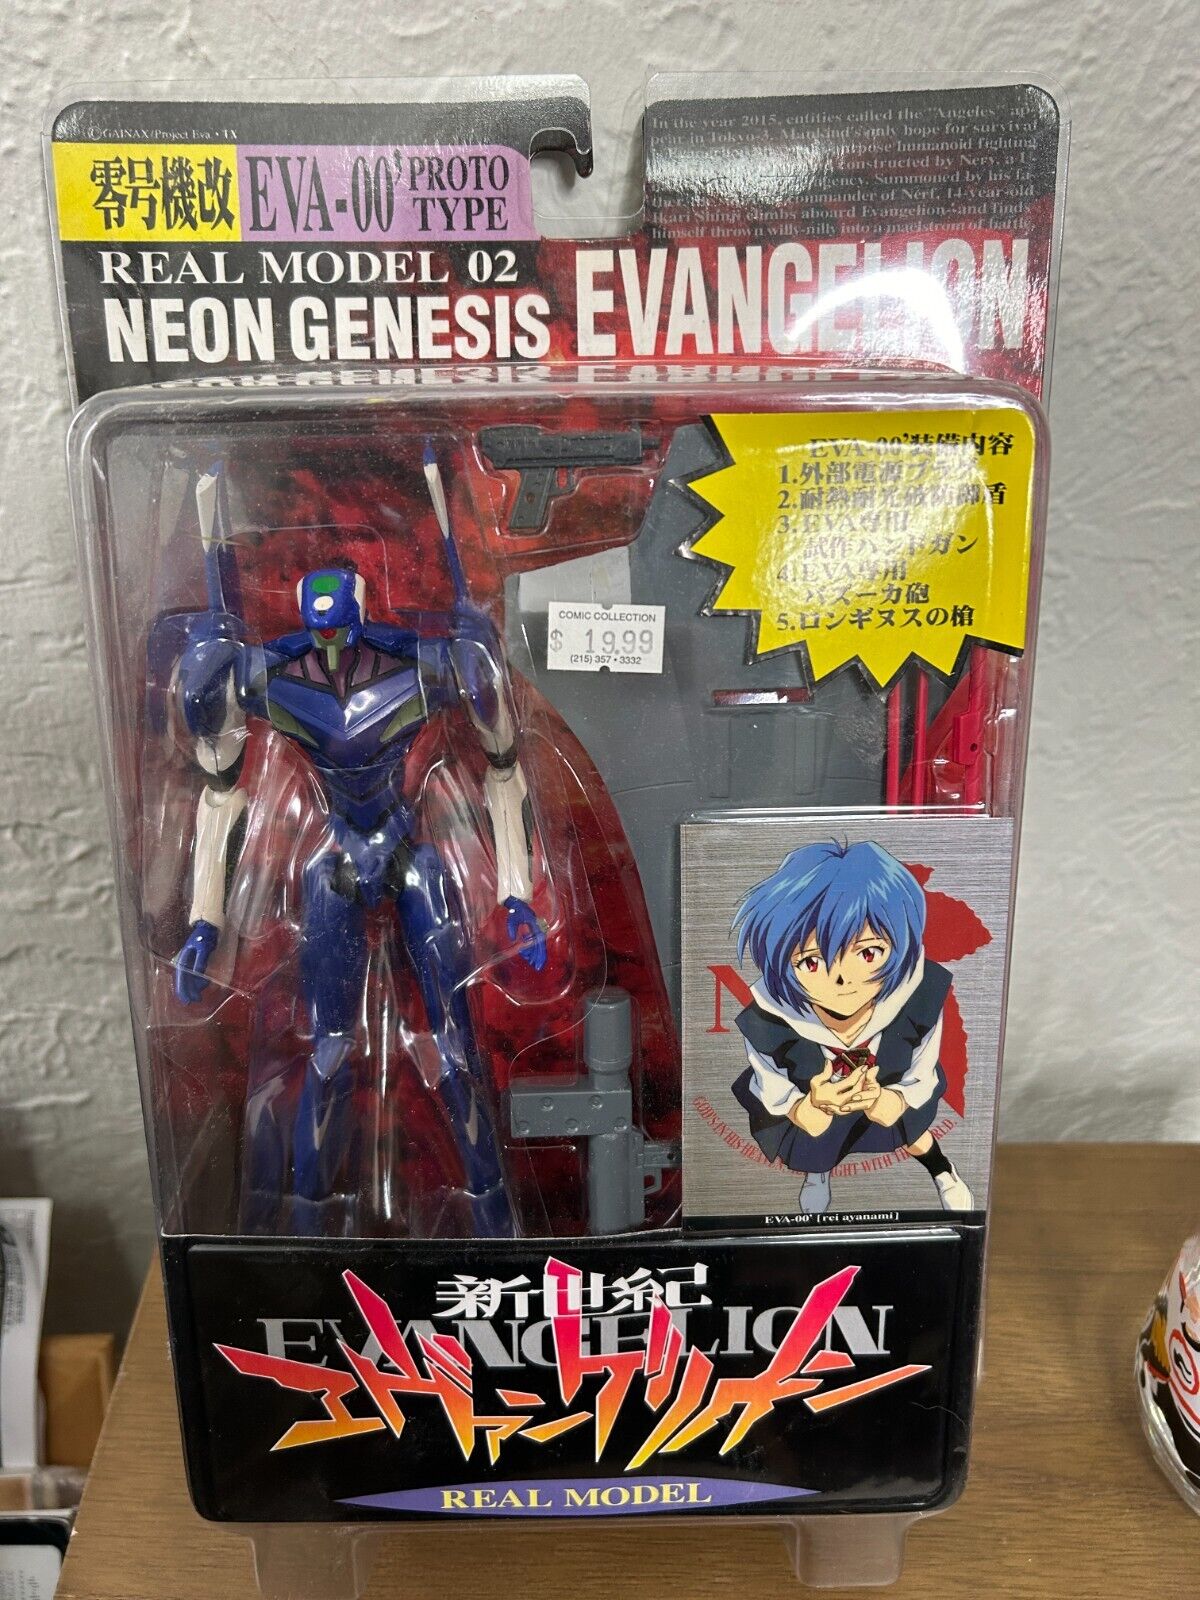 Neon Genesis Evangelion Real Model 02 EVA-00 PROTO Type Action Figure SEGA New